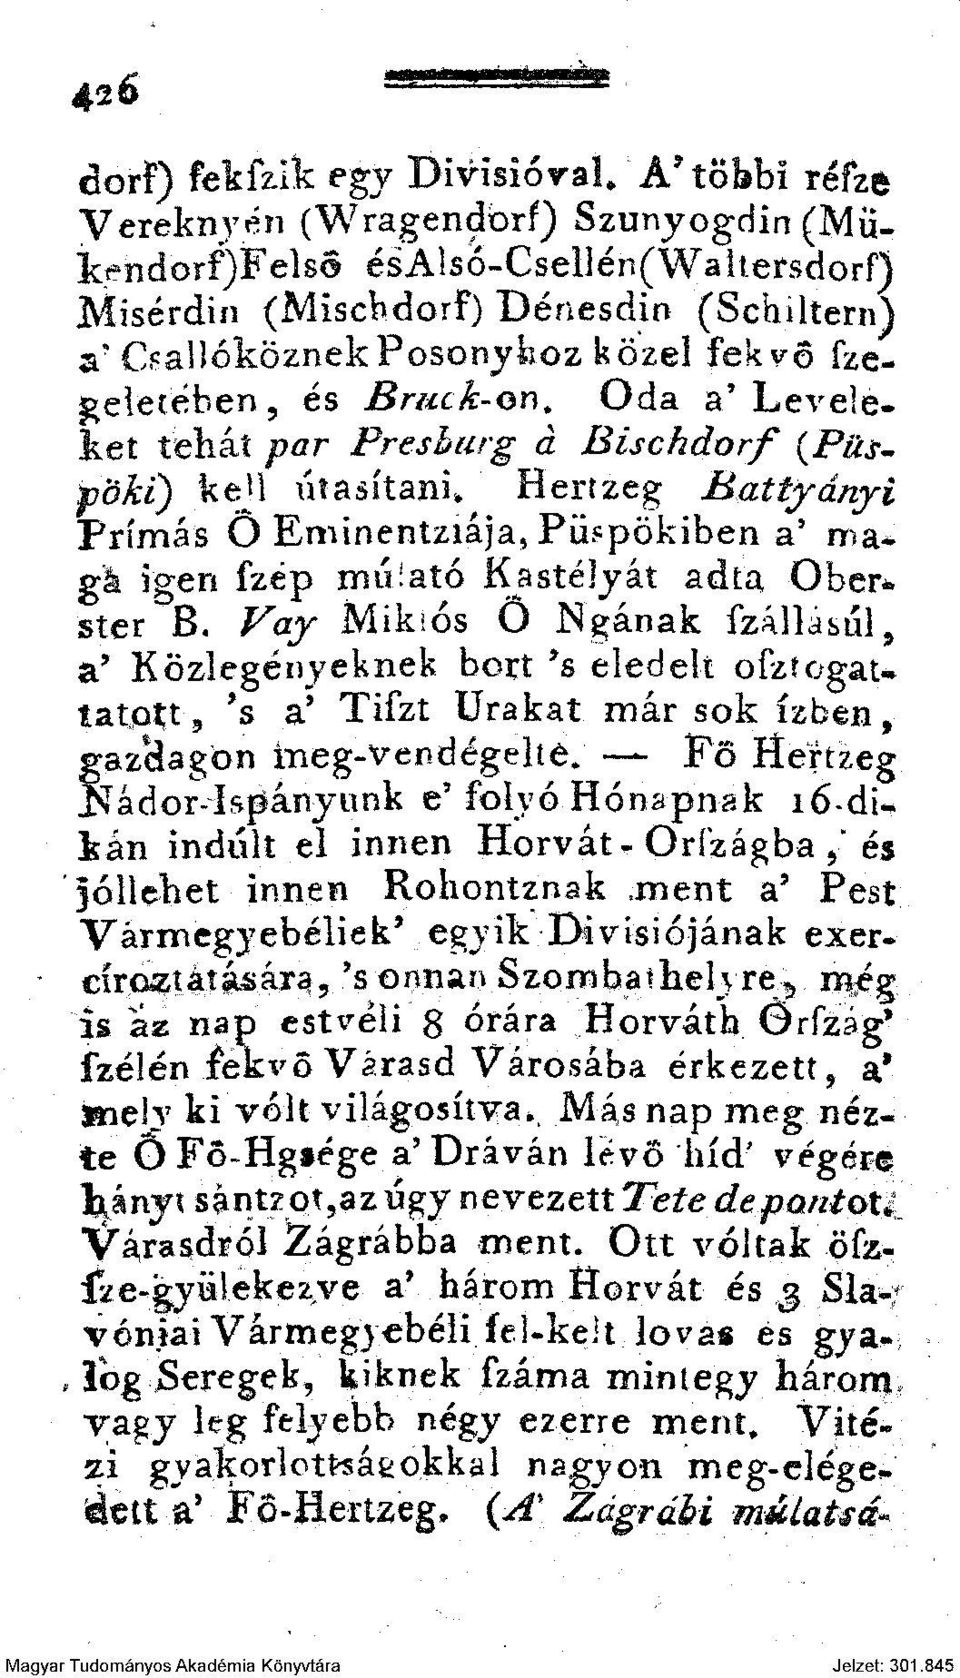 Hertzeg Battfányi Prímás Ö Eminentziája, Püspökiben a' ma* gá igen fzép rnúiató Kastélyát adta Ober* ster B.